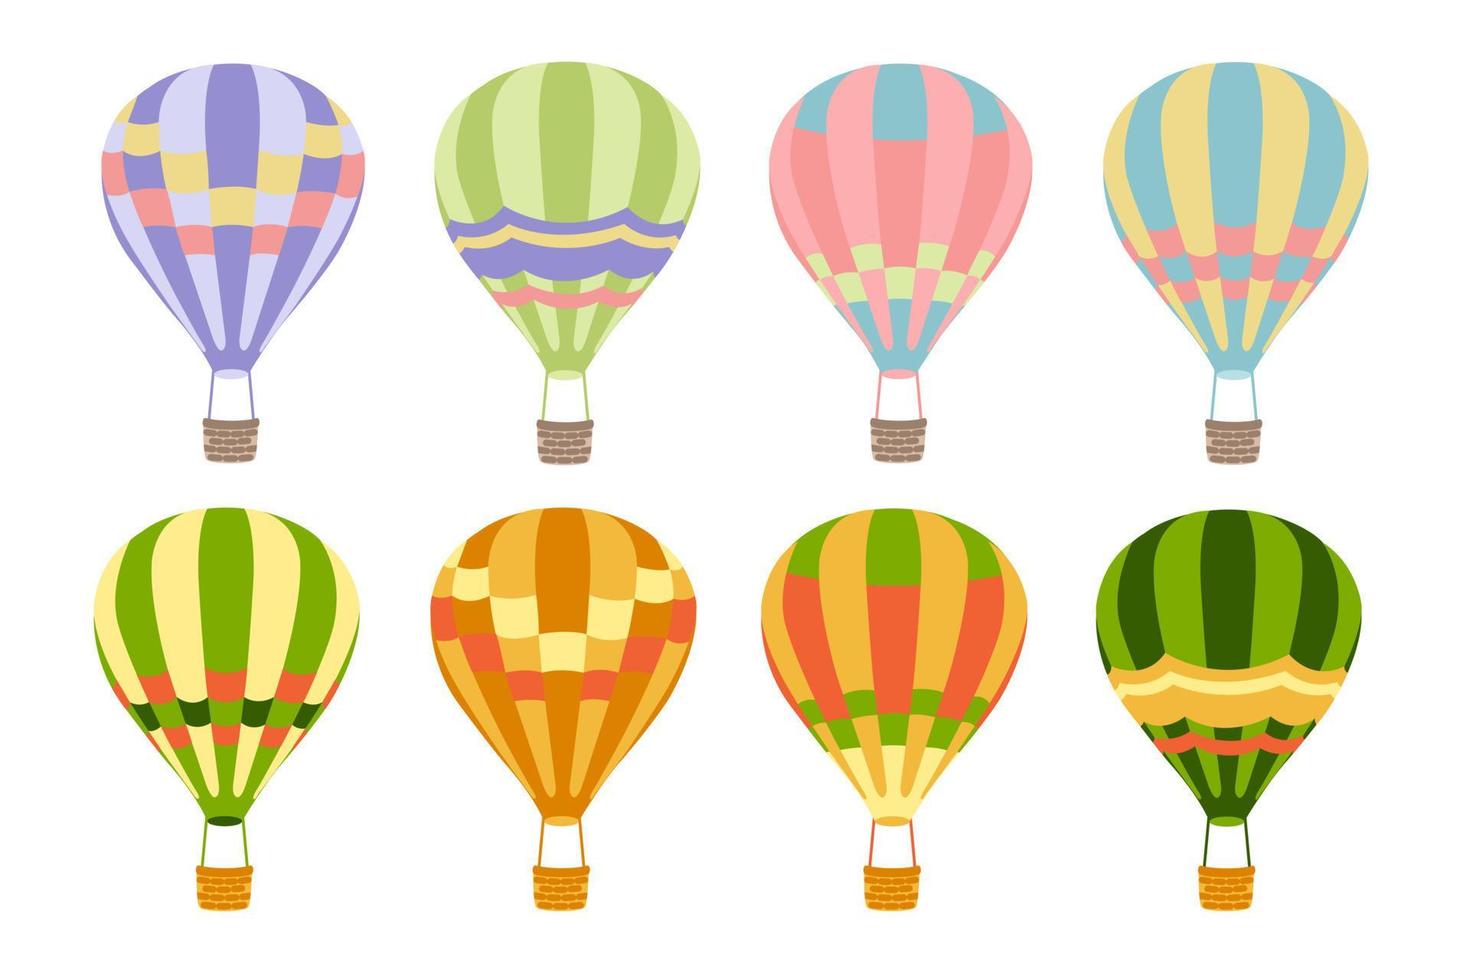 ställa in olika färgade ballonger i platt stil på vit bakgrund. samlingen av luftballong. tecknad stil. isolerat objekt. designkoncept, mall, element. vektor